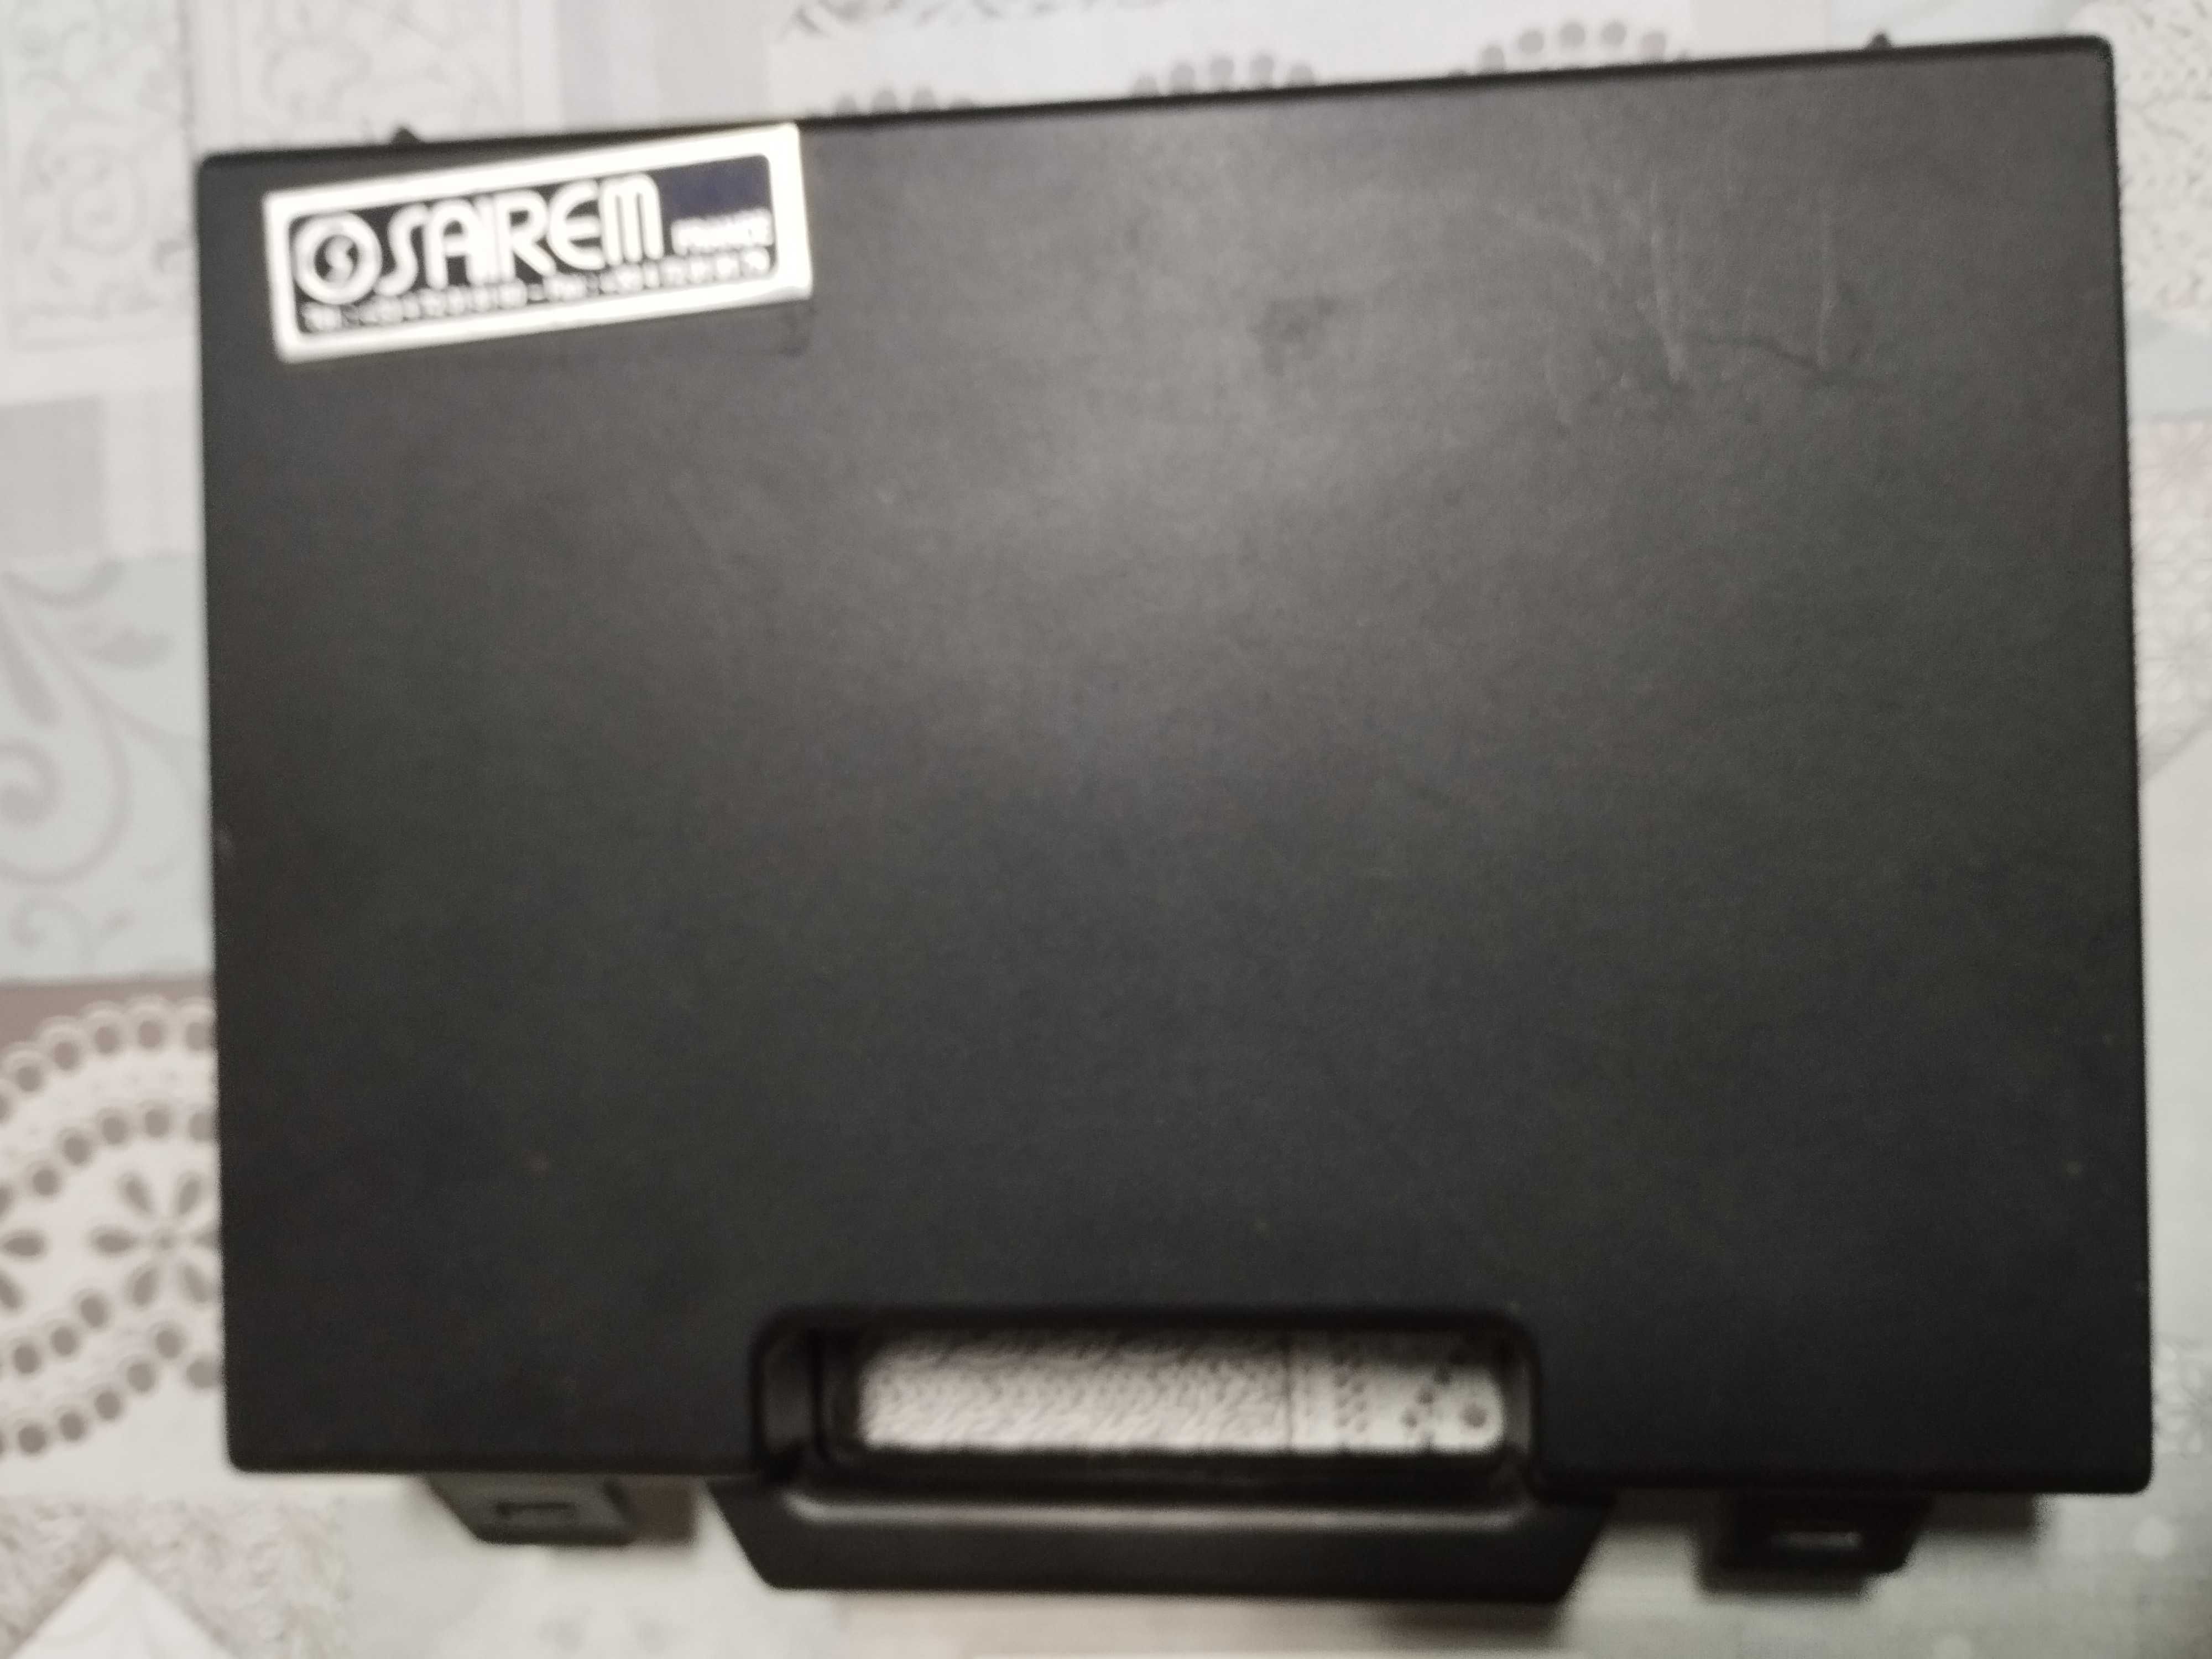 Detetor fugas de gás portátil e medidor de radiotividade microondas